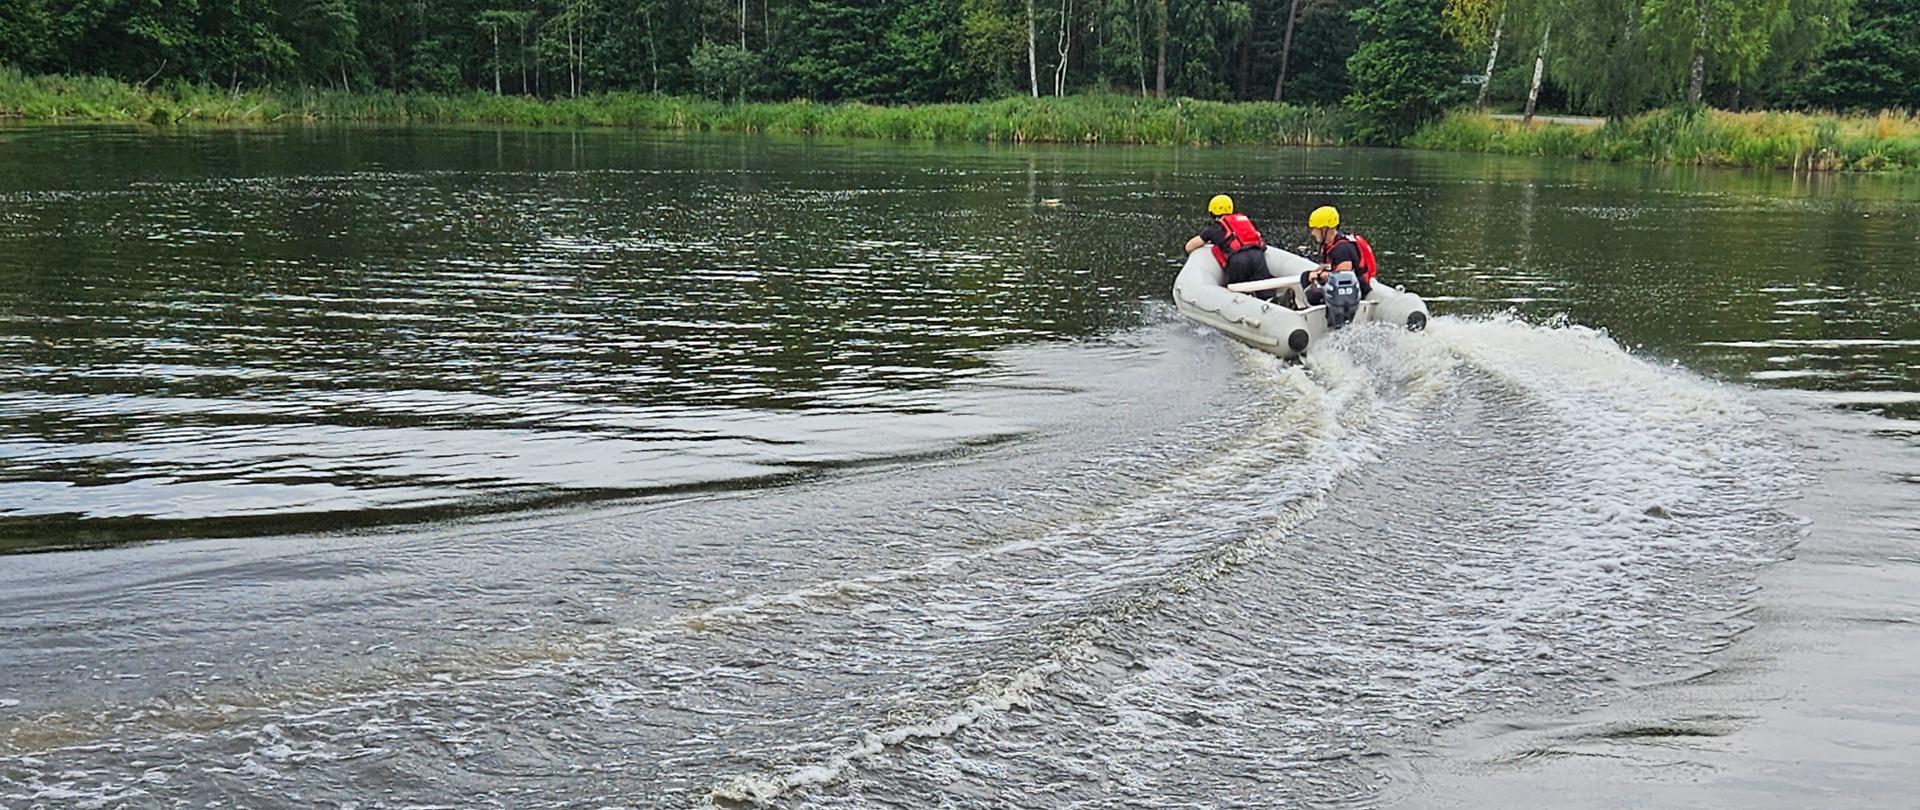 Strażacy pływający pontonem z silnikiem zaburtowym po akwenie wodnym „Biadaszek” w gminie Włoszczowa. Widoczny tył pojazdu. Sternik dokonuje manewru skrętu.